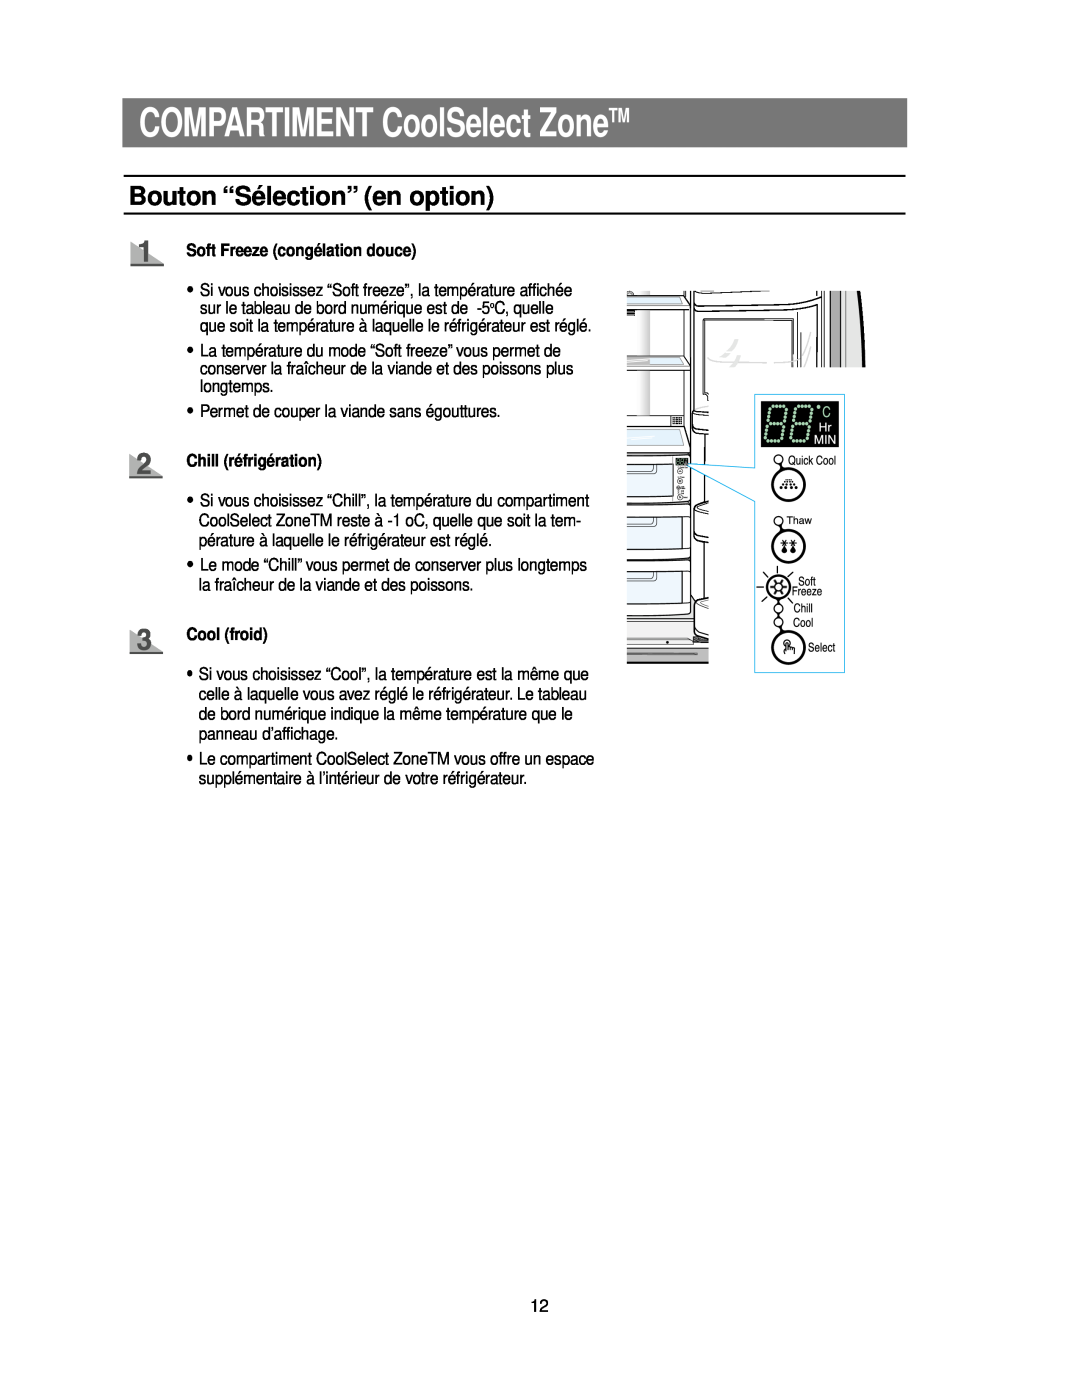 Samsung RS24KASW1/CAF manual COMPARTIMENT CoolSelect ZoneTM, Bouton “Sélection” en option, Soft Freeze congélation douce 